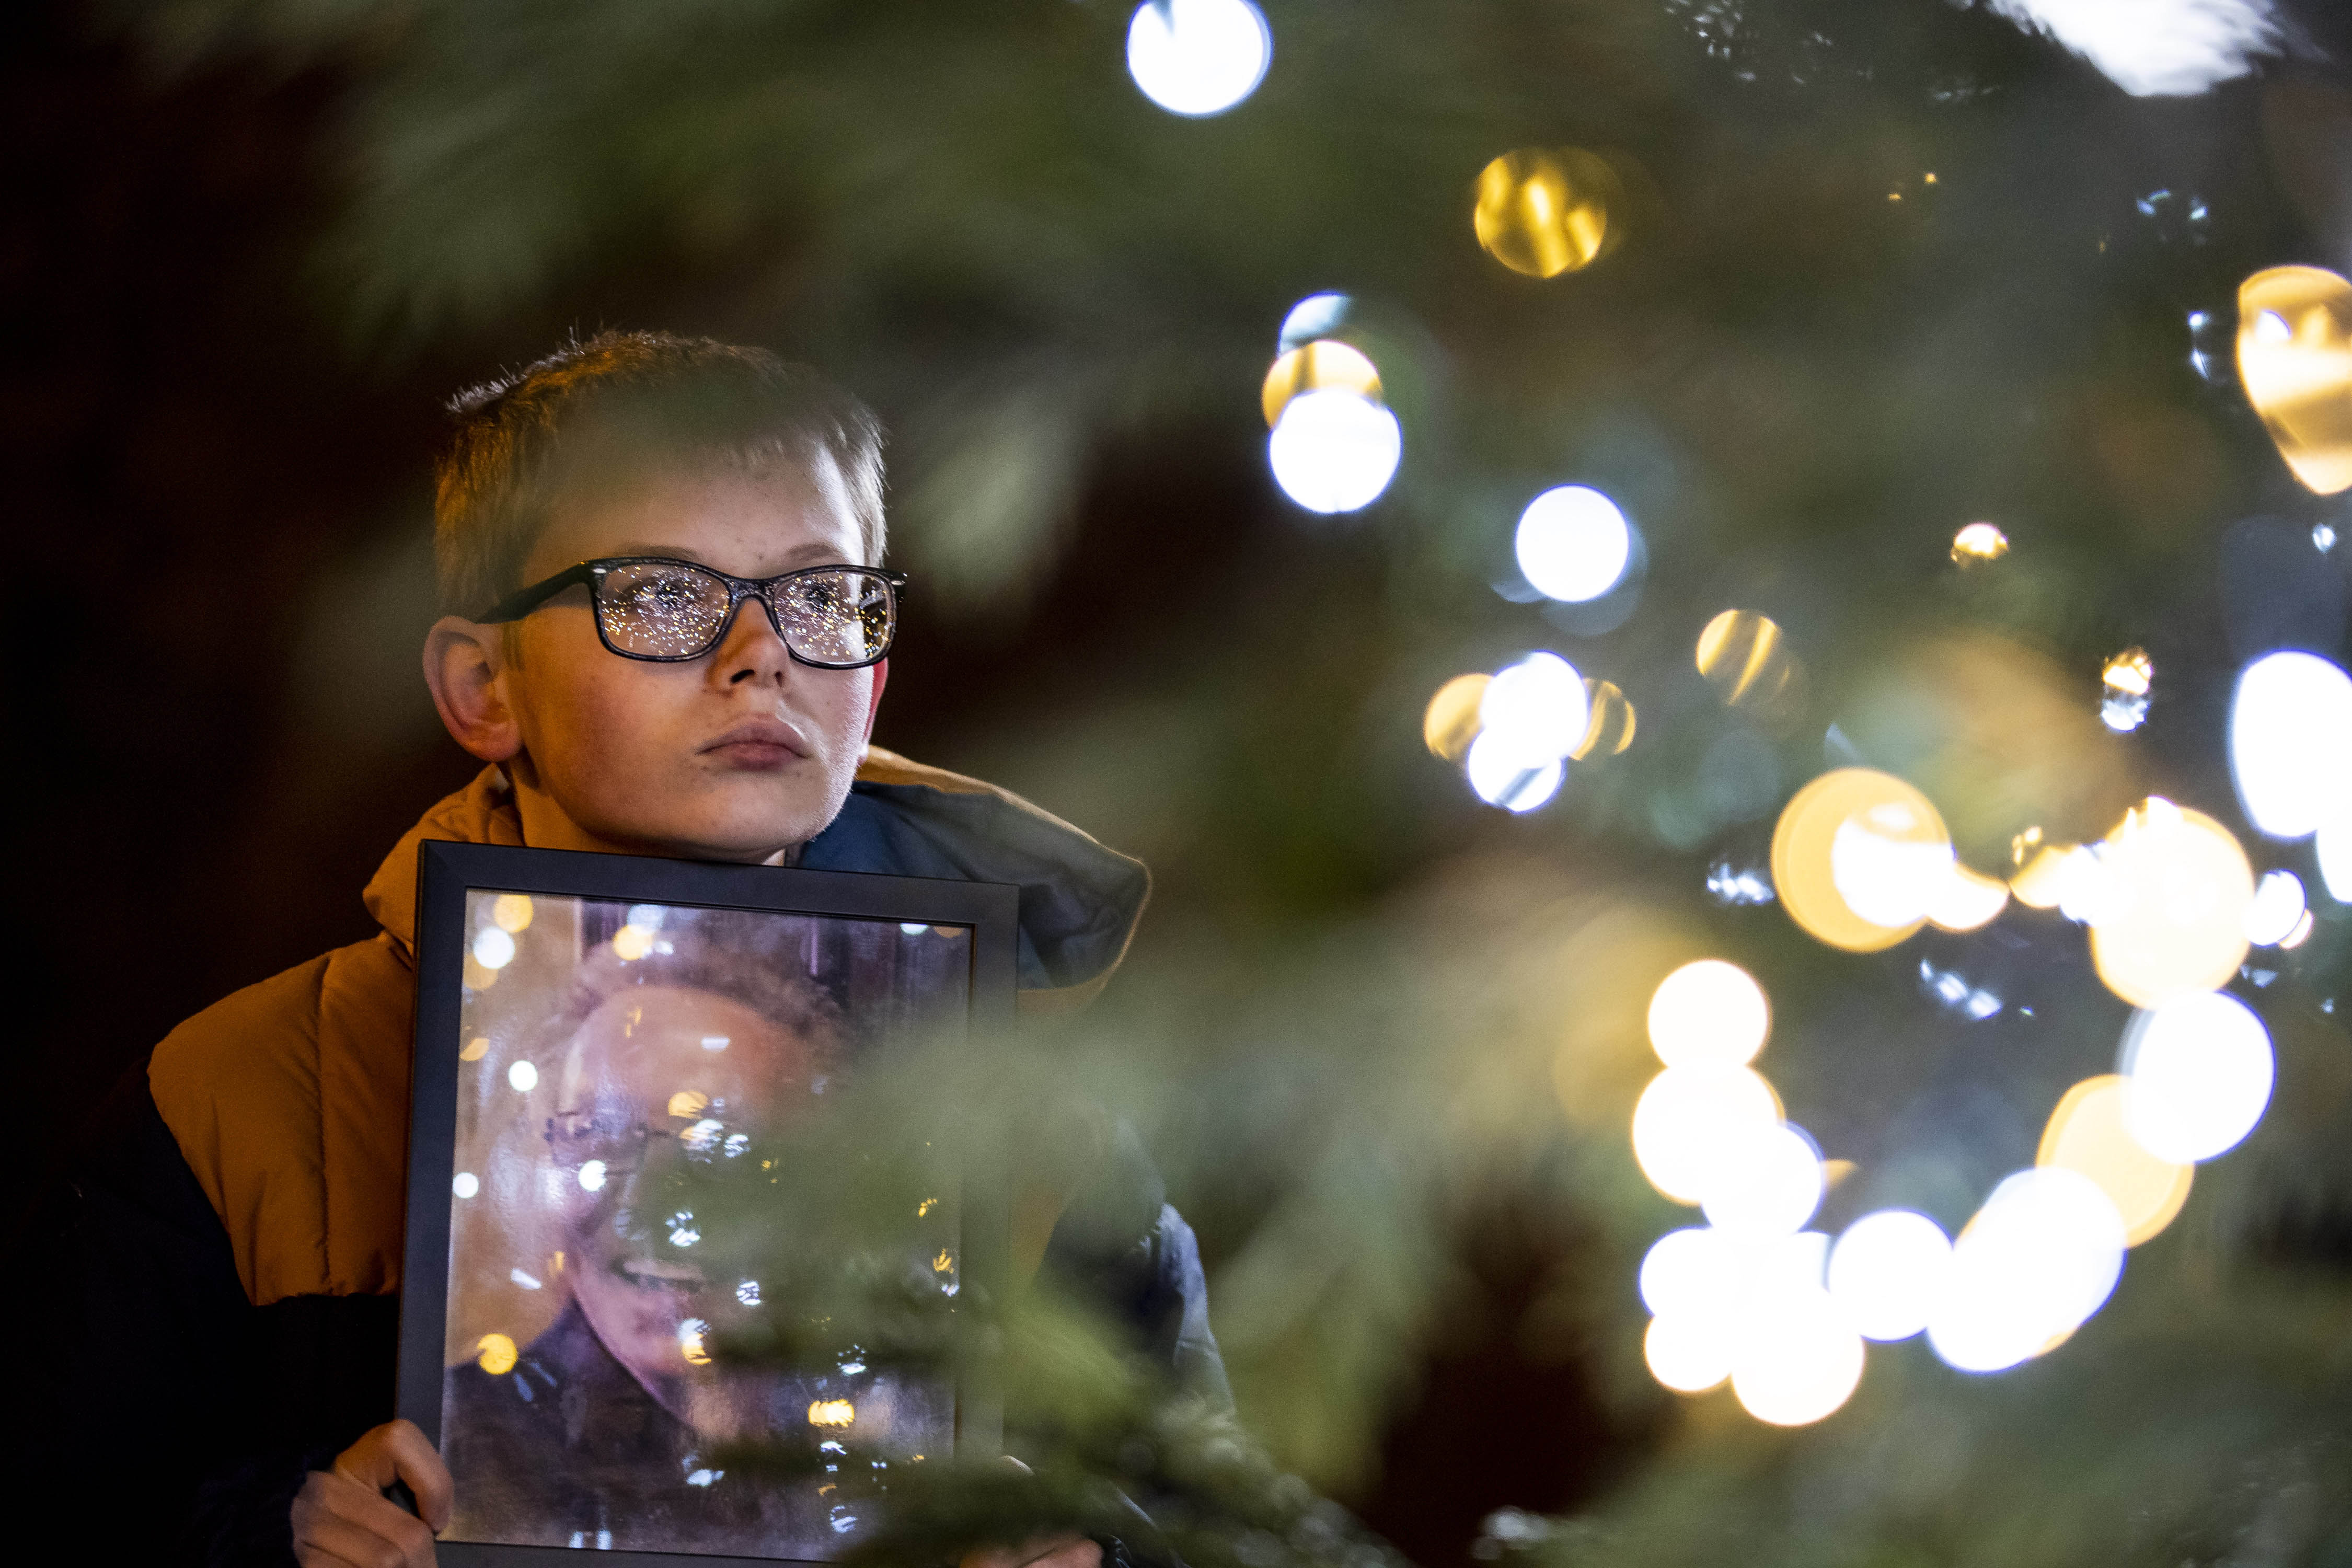 Christmas tree light up 2020